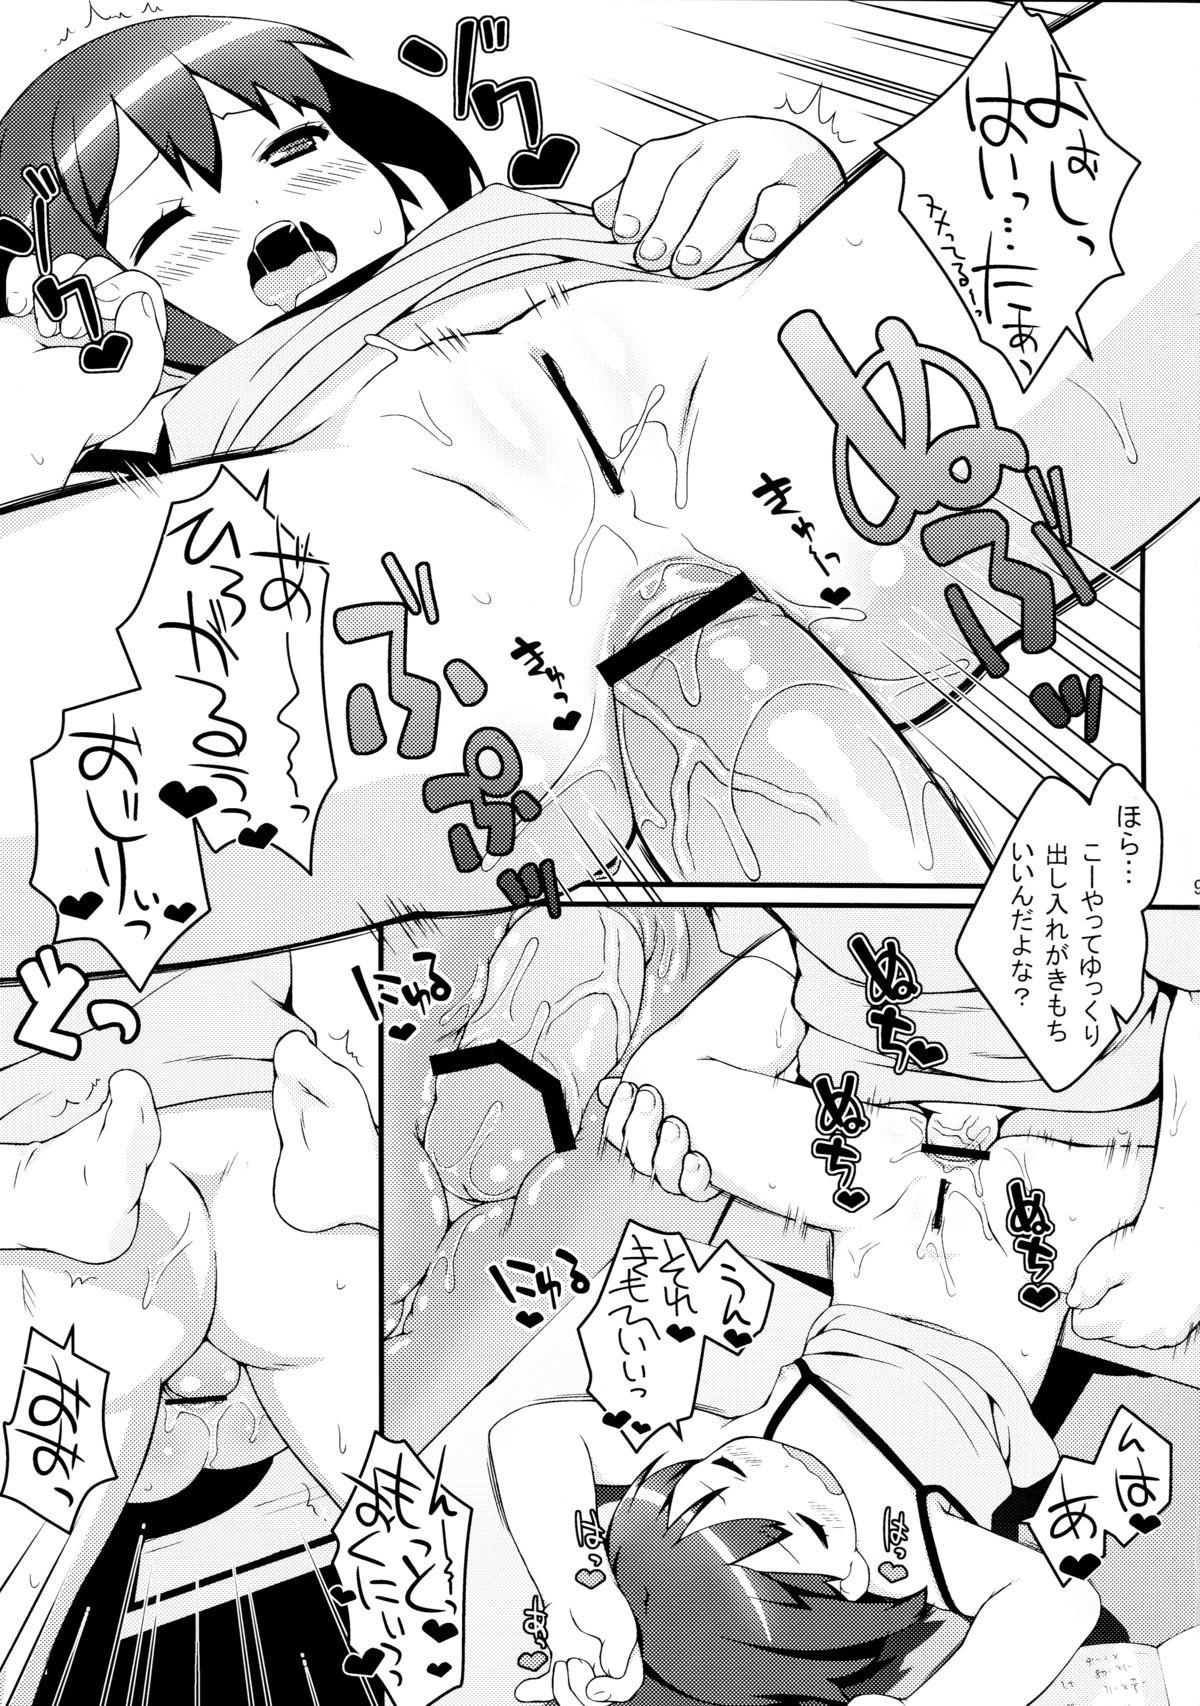 Vadia Imouto ni mo Koi ga Shitai - Chuunibyou demo koi ga shitai Stockings - Page 9